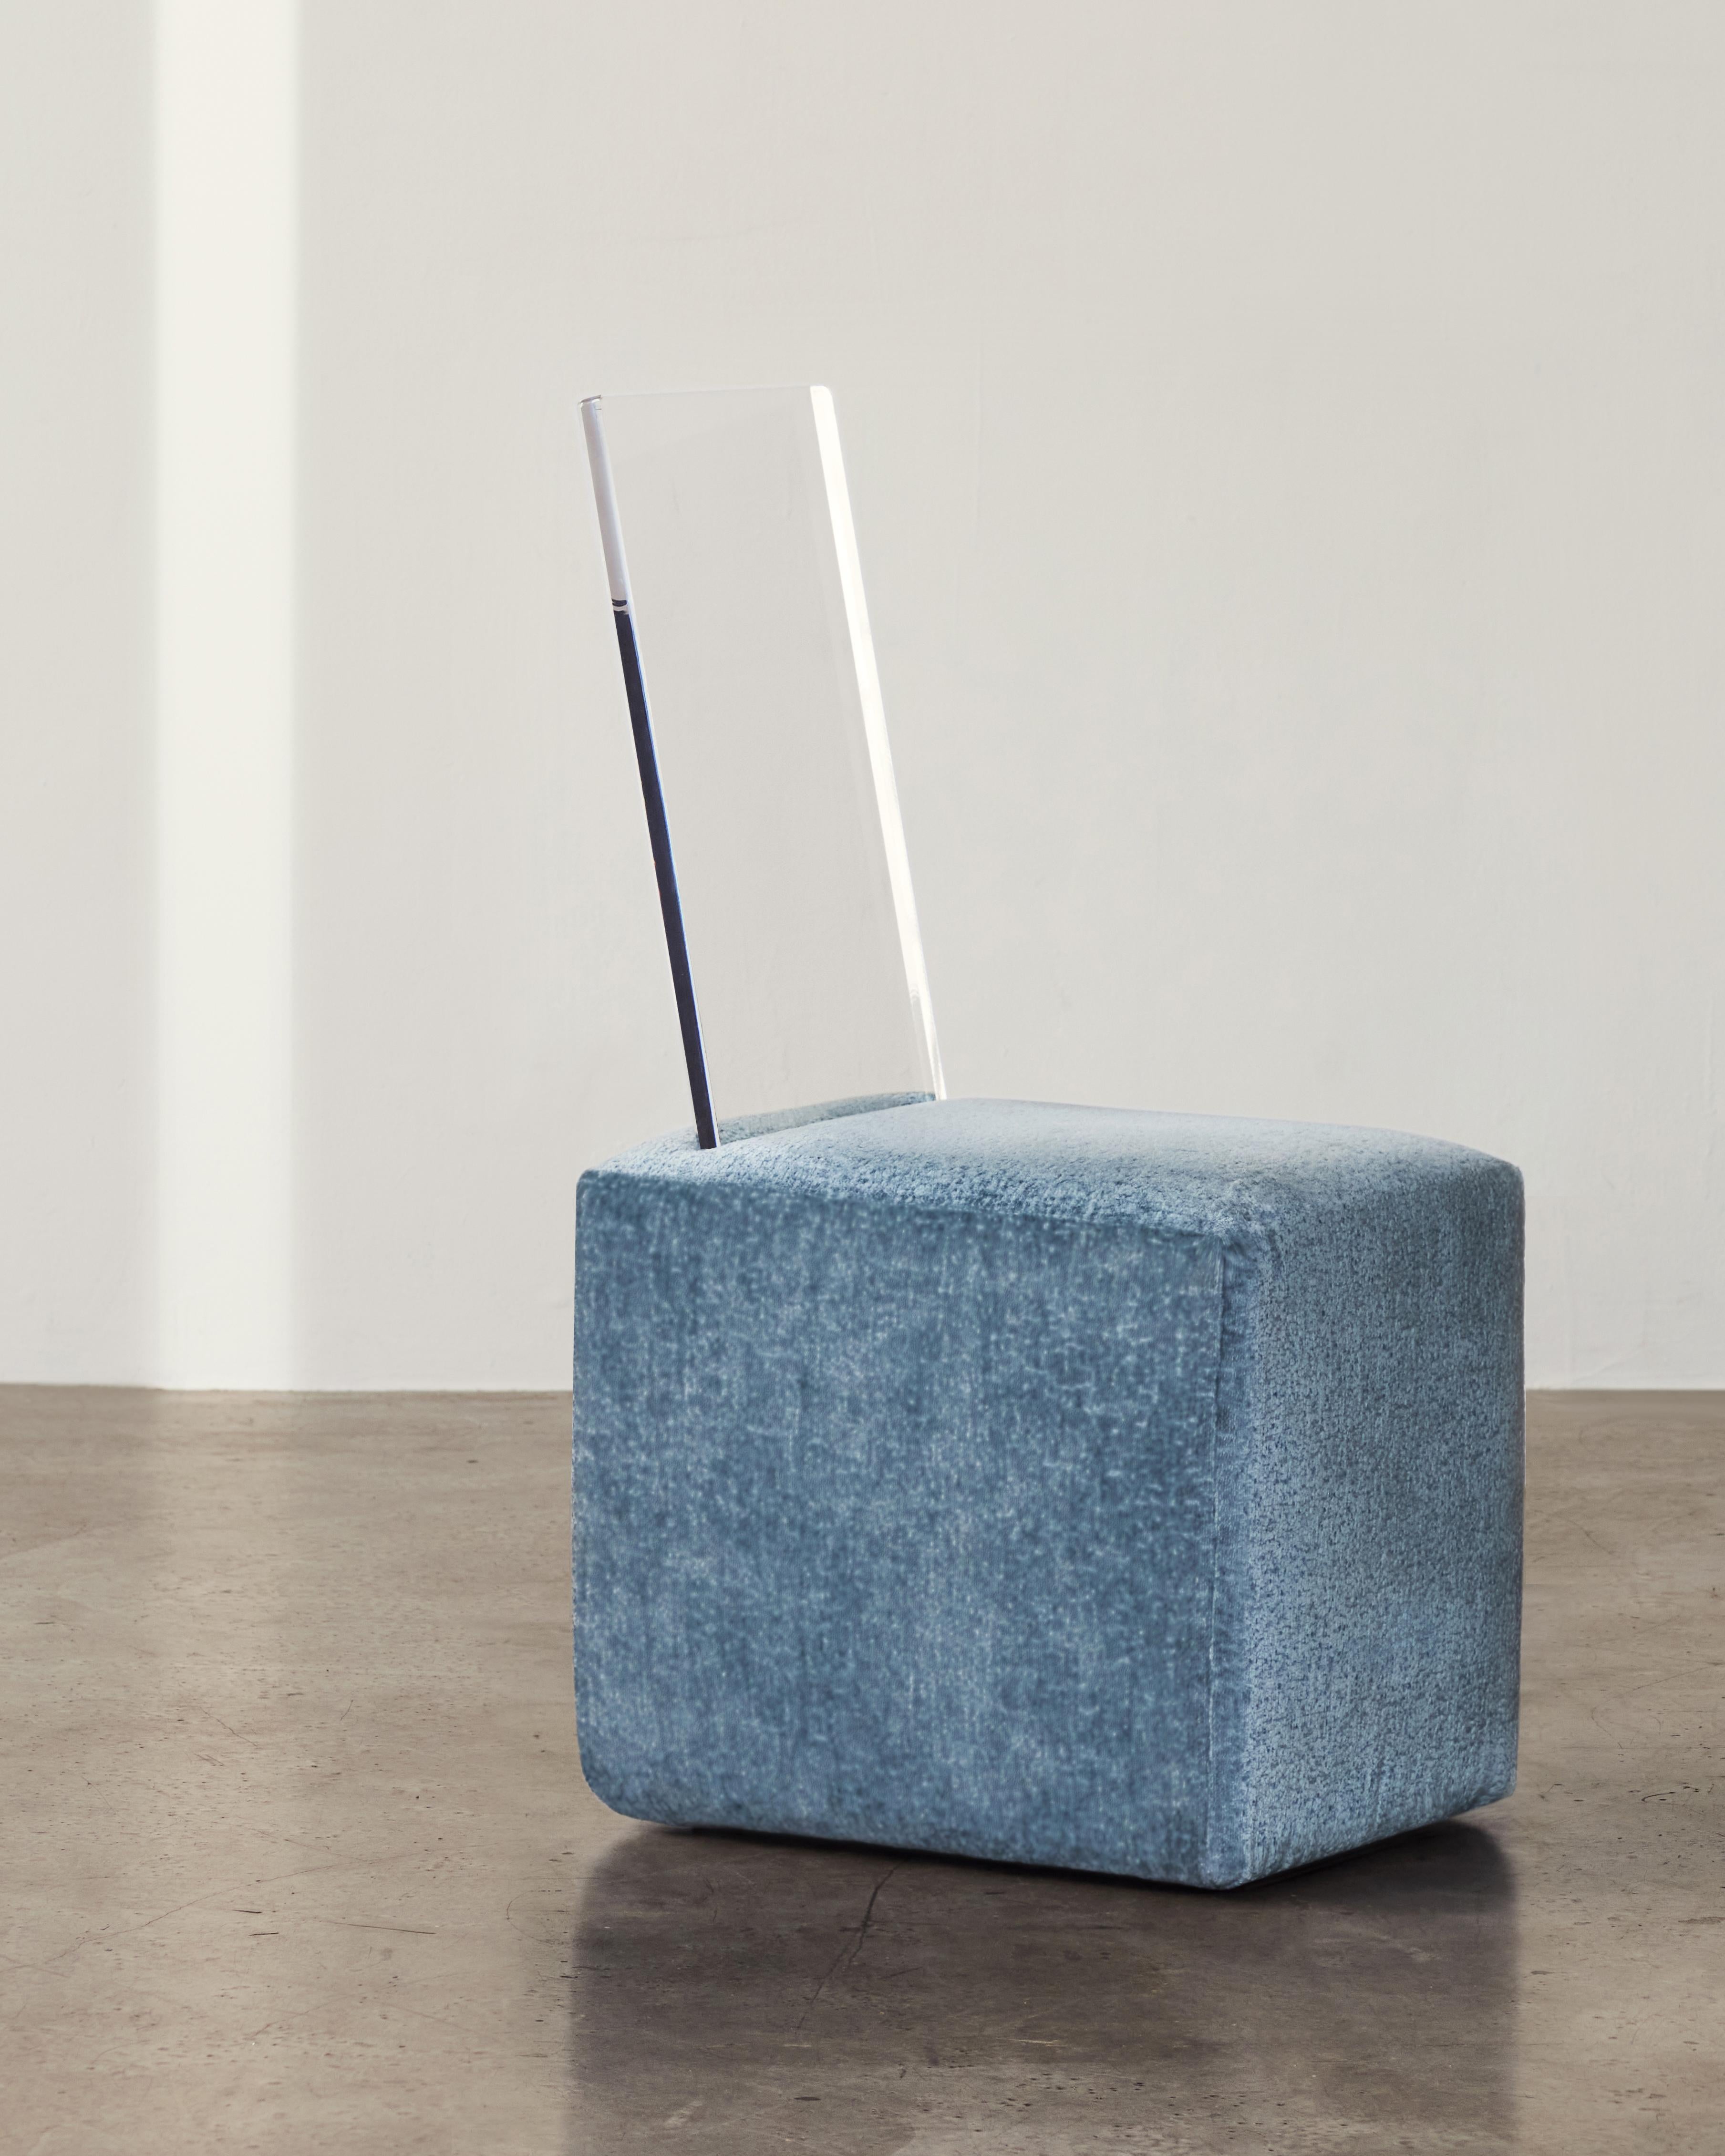 Vu dans : Sight Unseen, Interior Design Magazine, Surface Magazine

BLOC Cube Chair fait partie d'une collection de cinq pièces de mobilier sculptural rembourré et en matériaux mixtes. La Collection S'inspire de formes géométriques familières